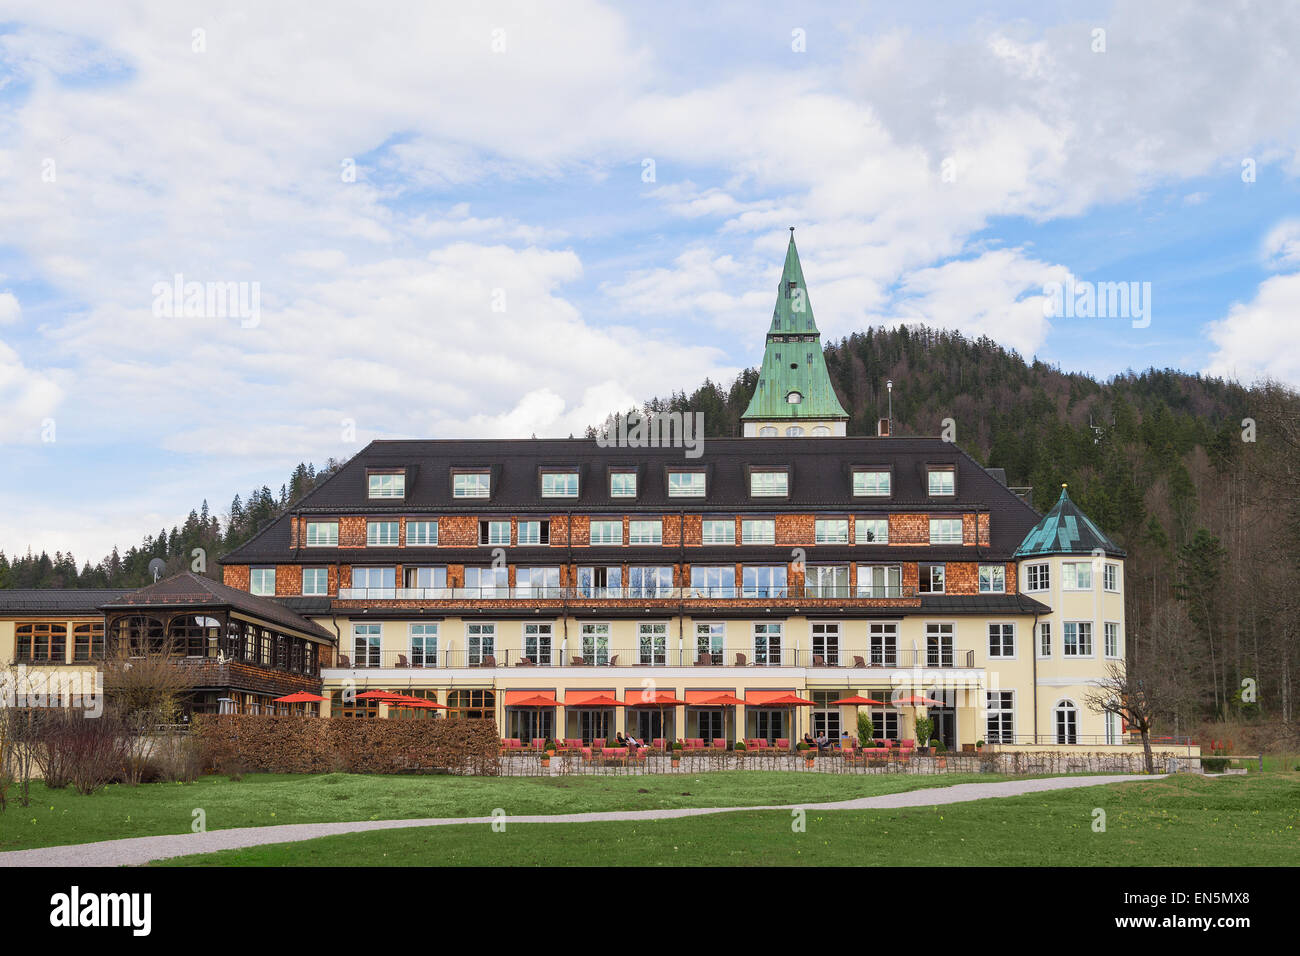 Nel cortile dell'hotel Schloss Elmau. La quarantunesima conferenza dei G7 Summit si terrà in questi residence di lusso su giugno 7-8, 2015. Foto Stock